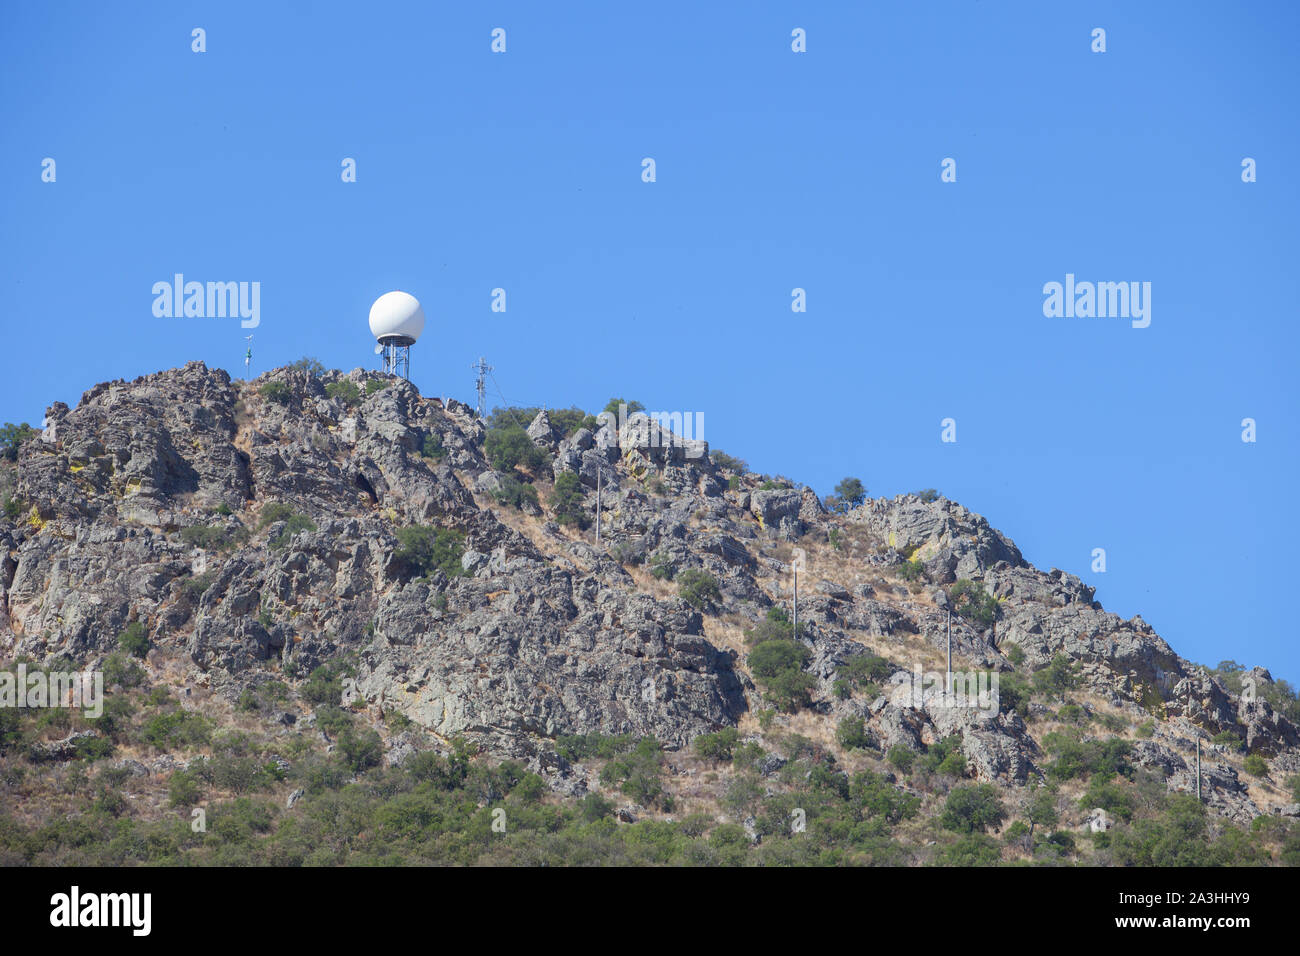 Wetterradar Station auf dem Gipfel des Sierra de Fuentes, Spanien, Wellnessbereich. Blauer Himmel Stockfoto